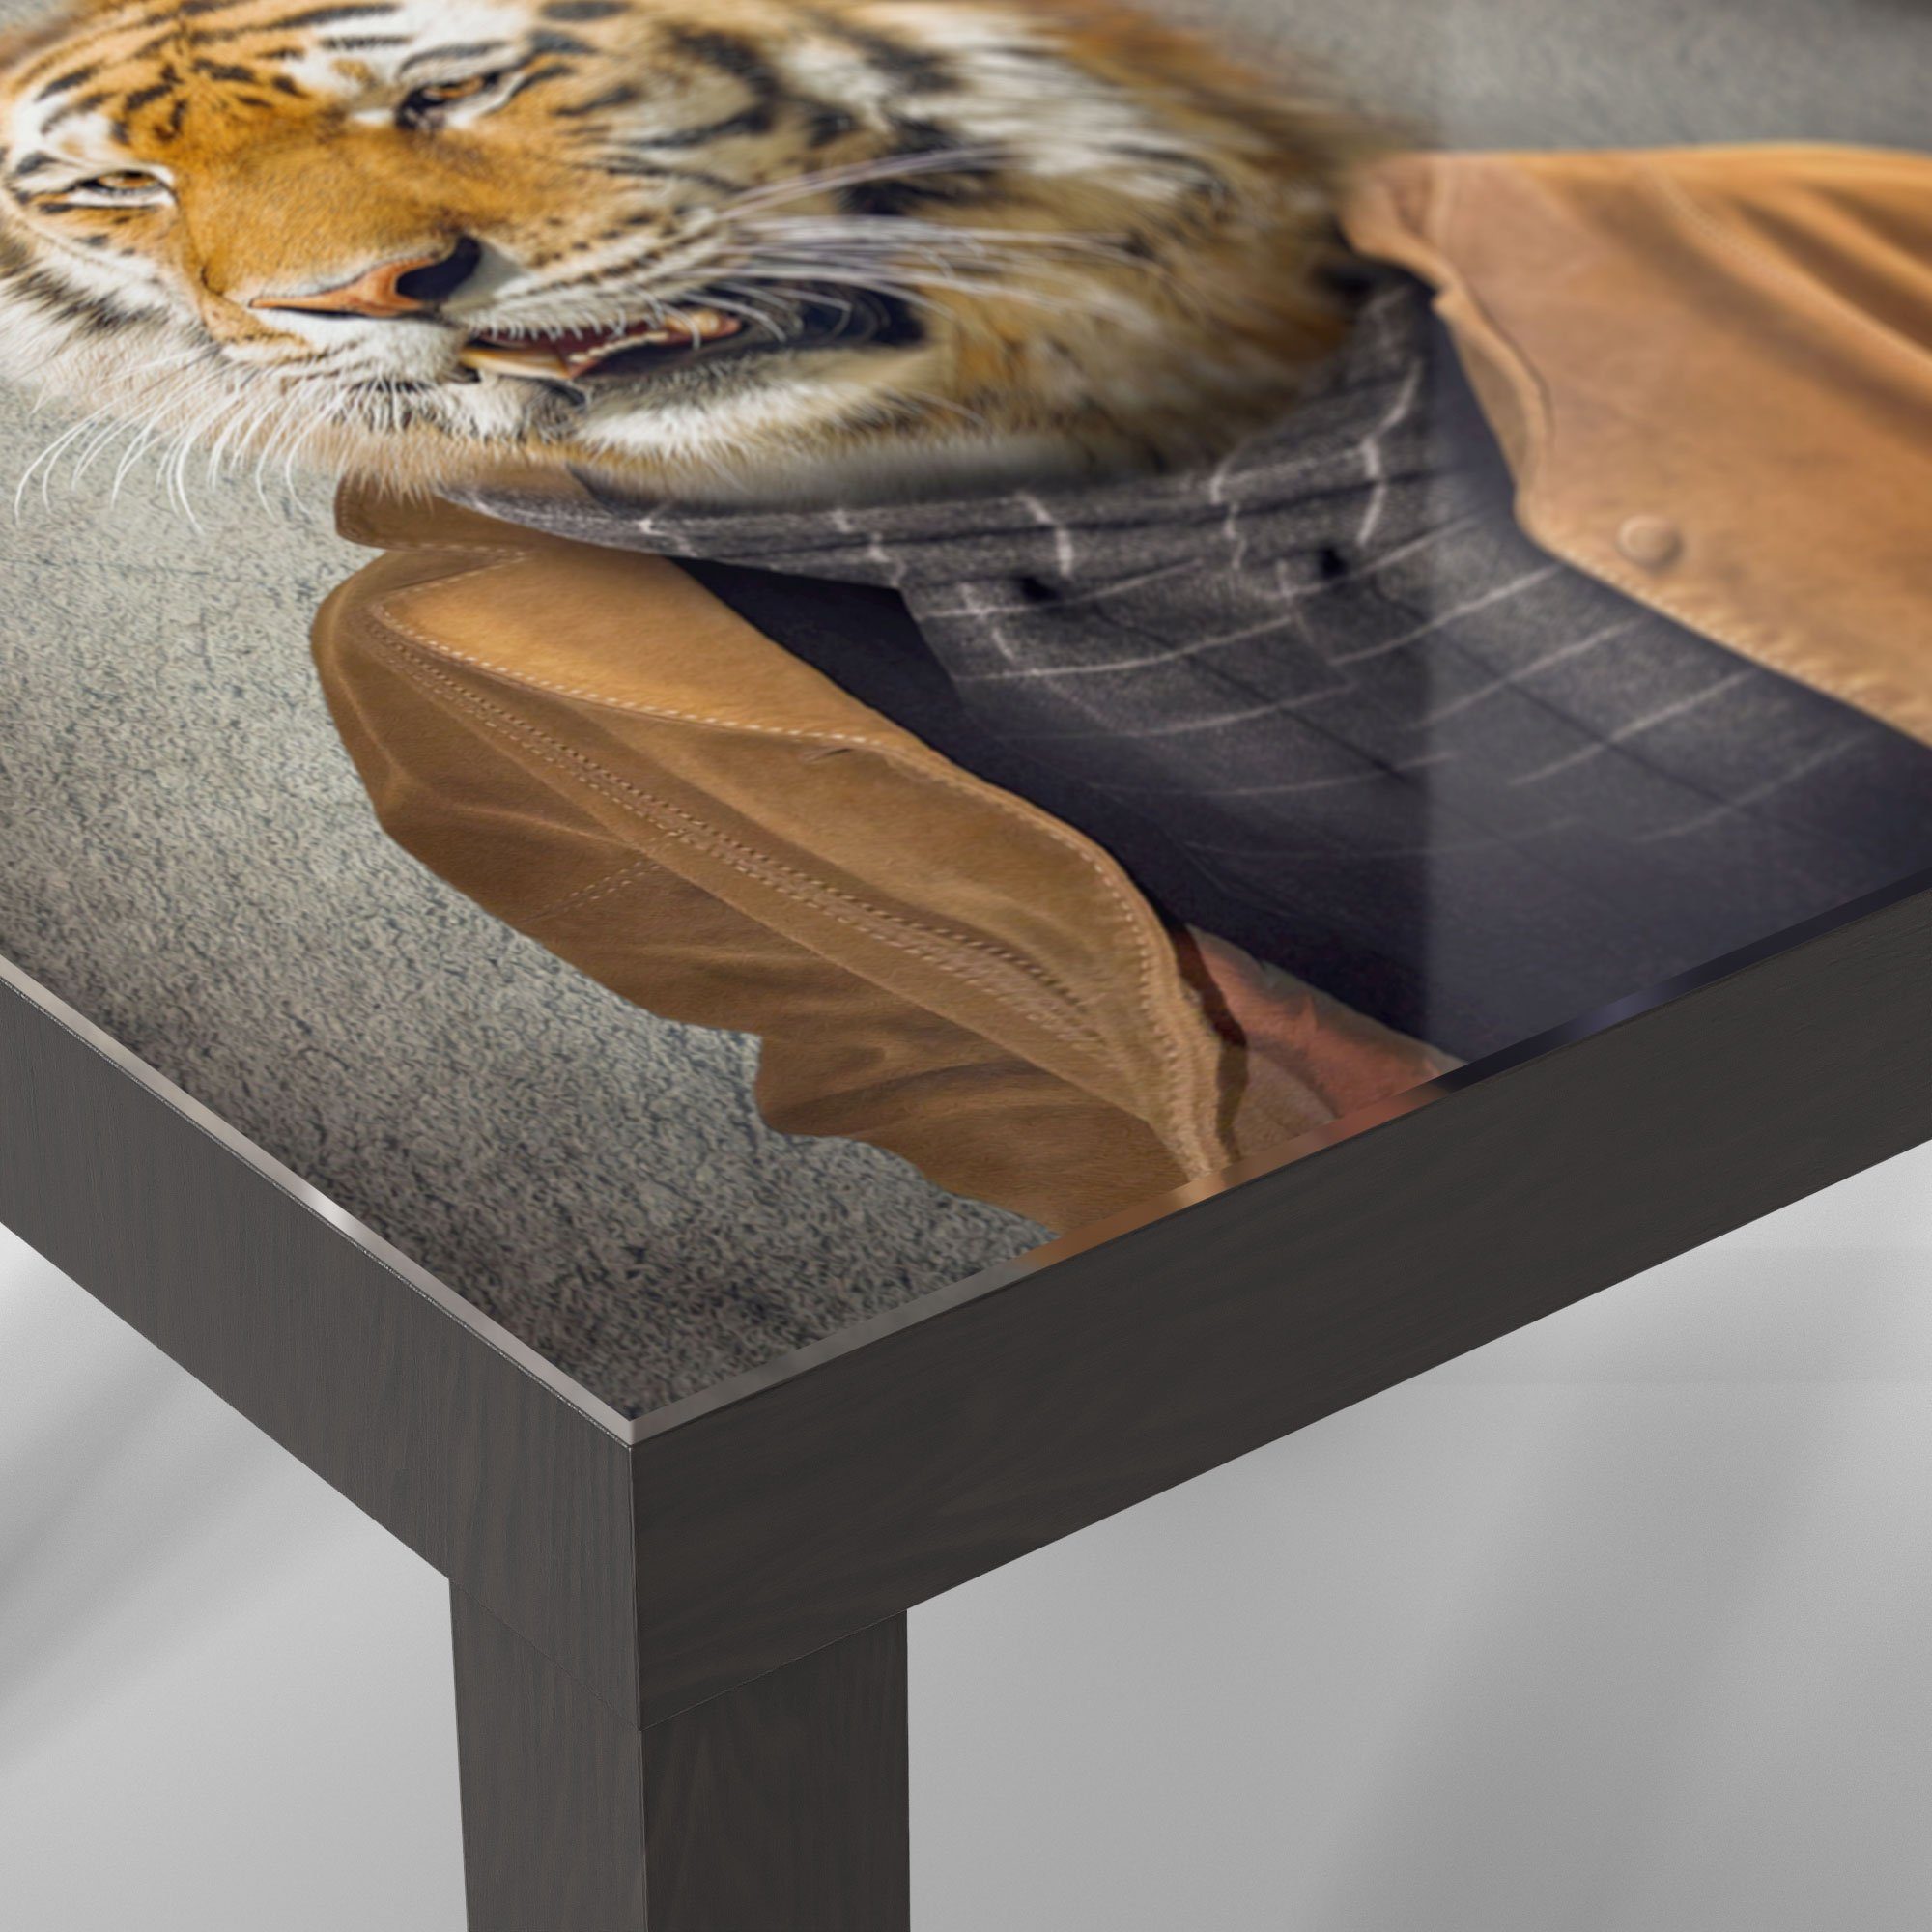 DEQORI Couchtisch 'Tiger Menschengestalt', modern Beistelltisch Schwarz Glastisch in Glas